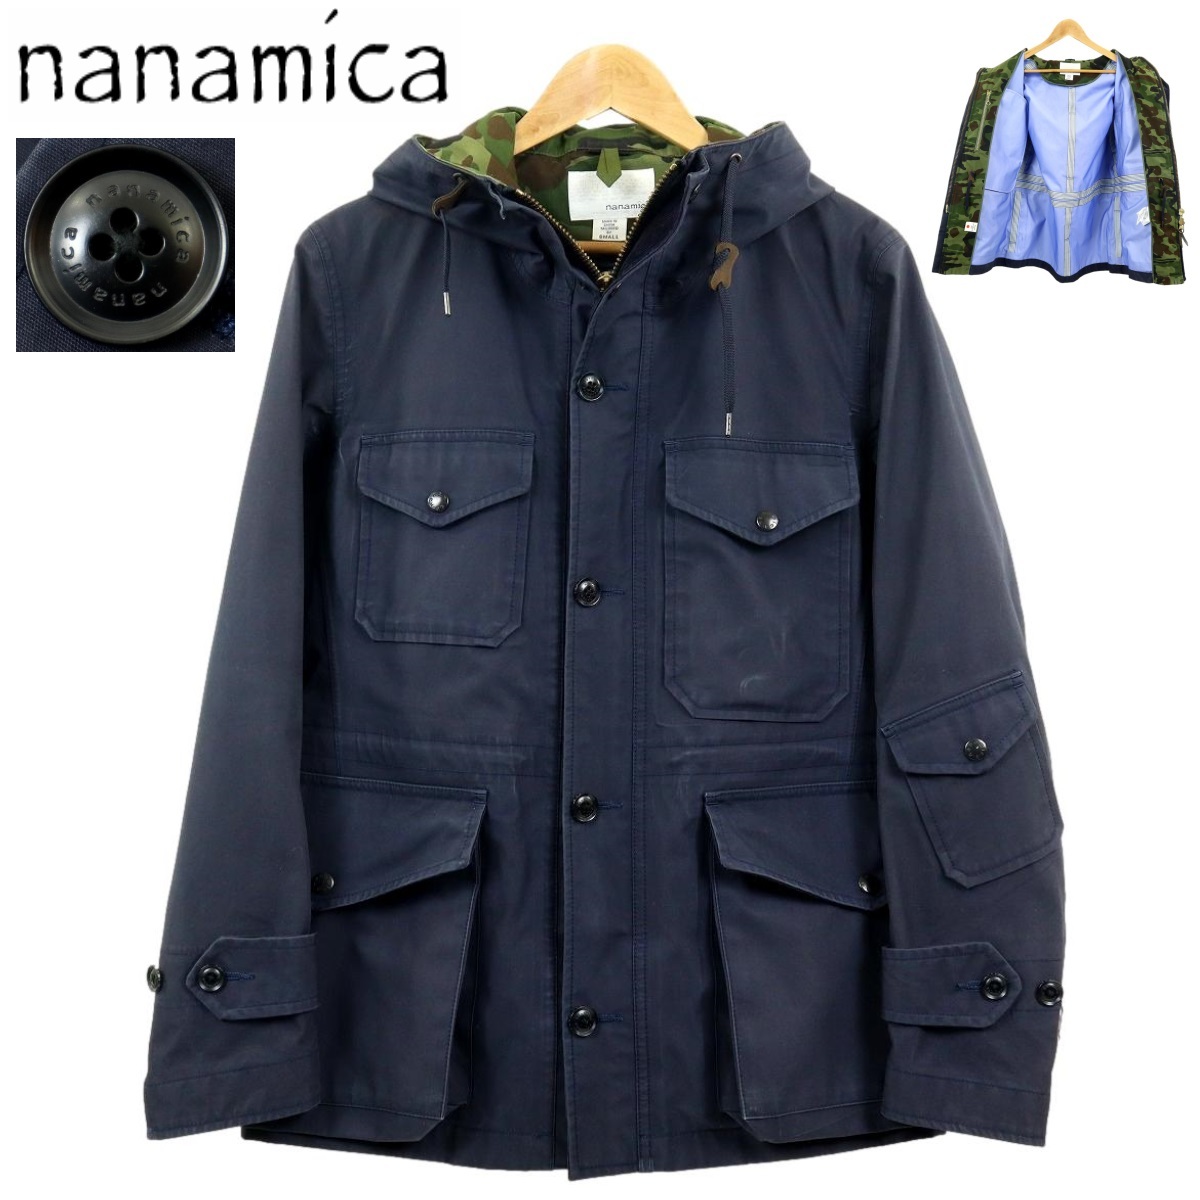 【B2867】nanamica ナナミカ クルーザージャケット マウンテンパーカー GORE-TEX ゴアテックス カモフラージュ 迷彩 SUAS305